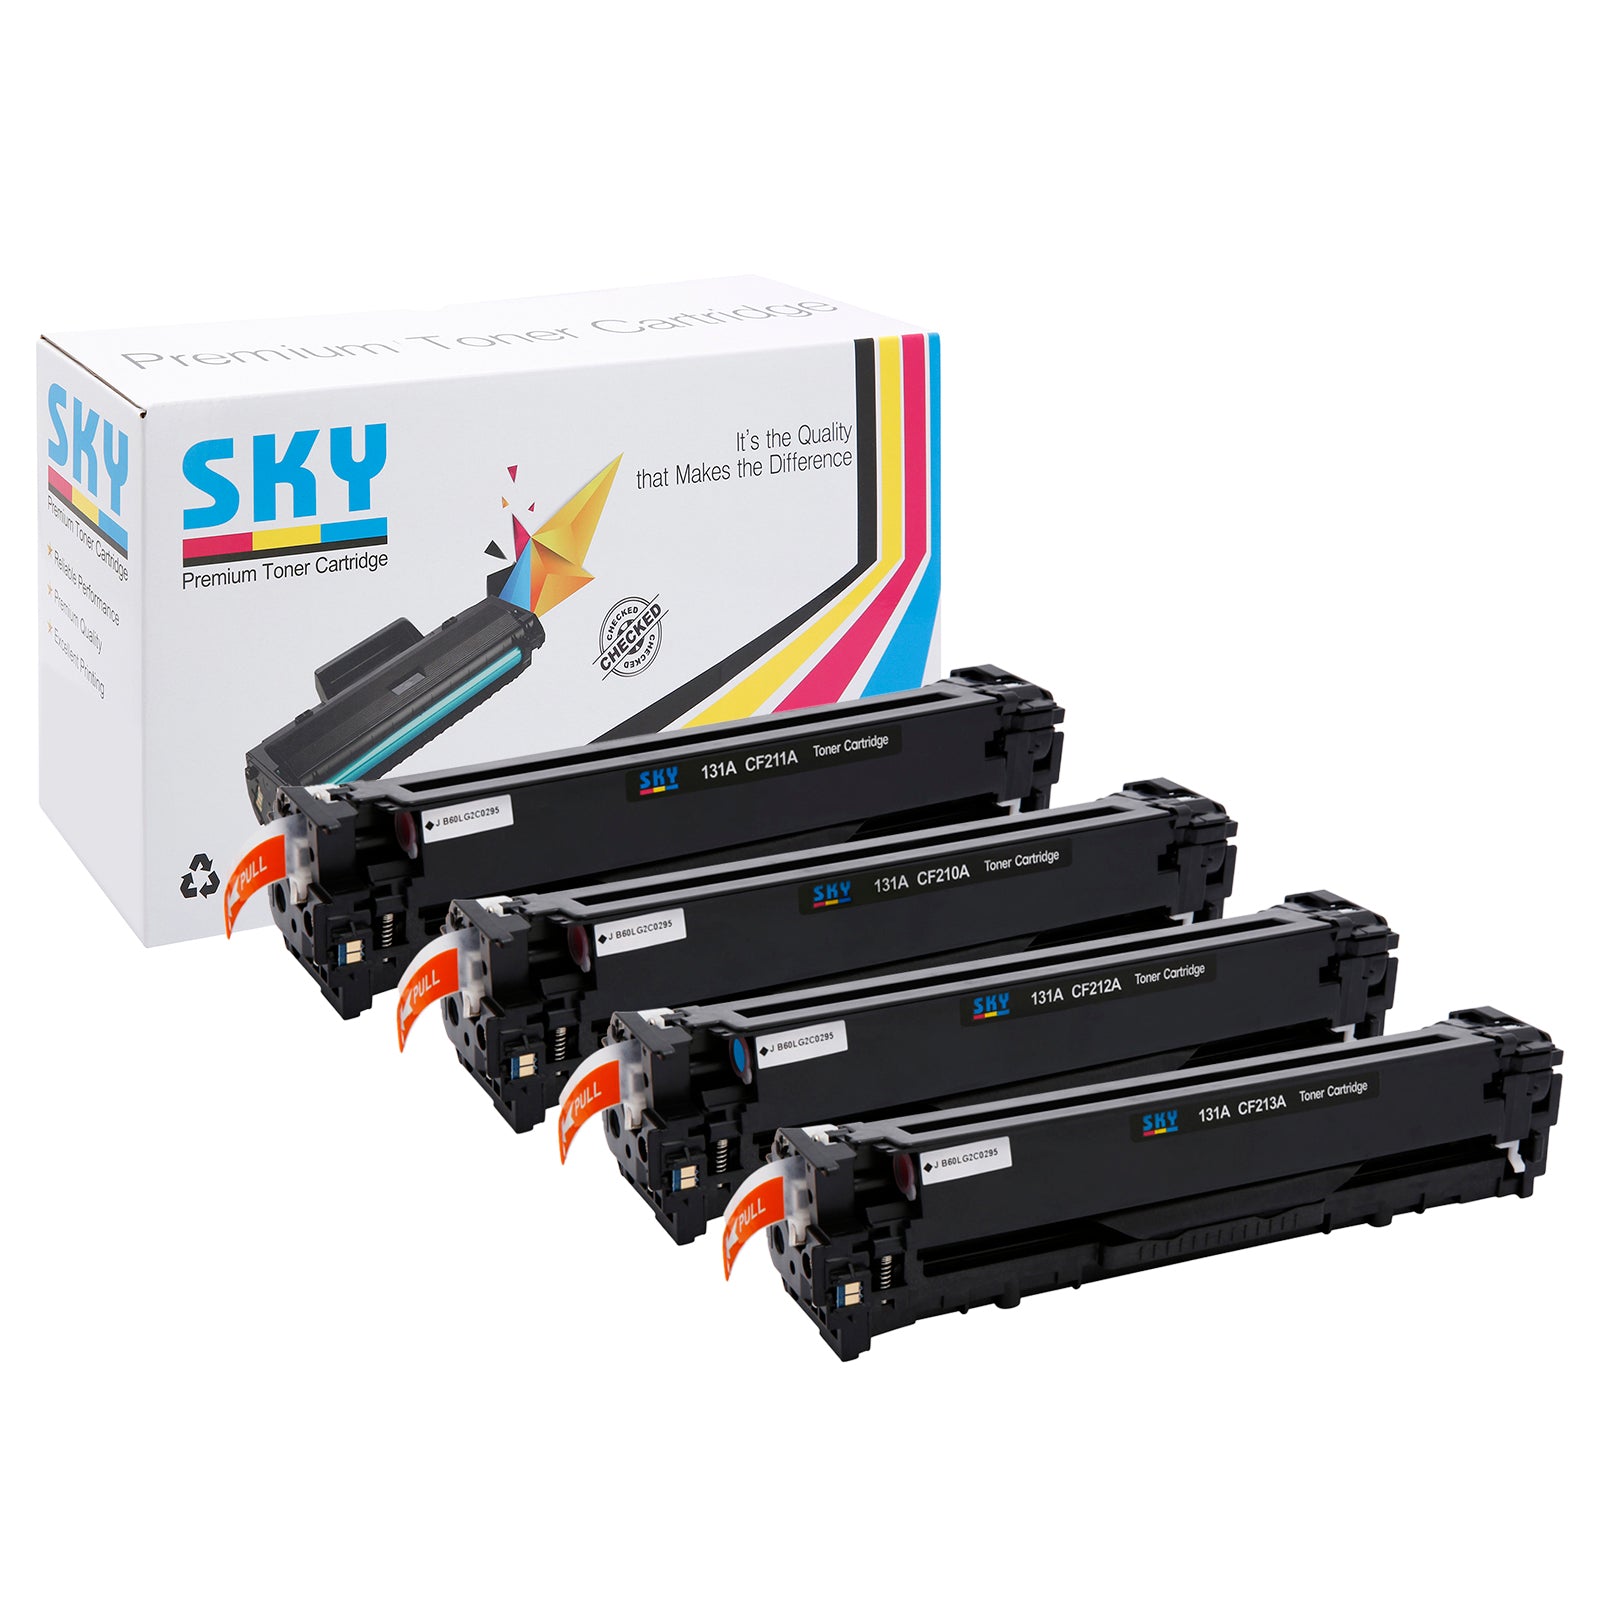 SKY 131A Compatible Toner Cartridges for HP Colour LaserJet Pro 200 Color  M251 , M276 Series